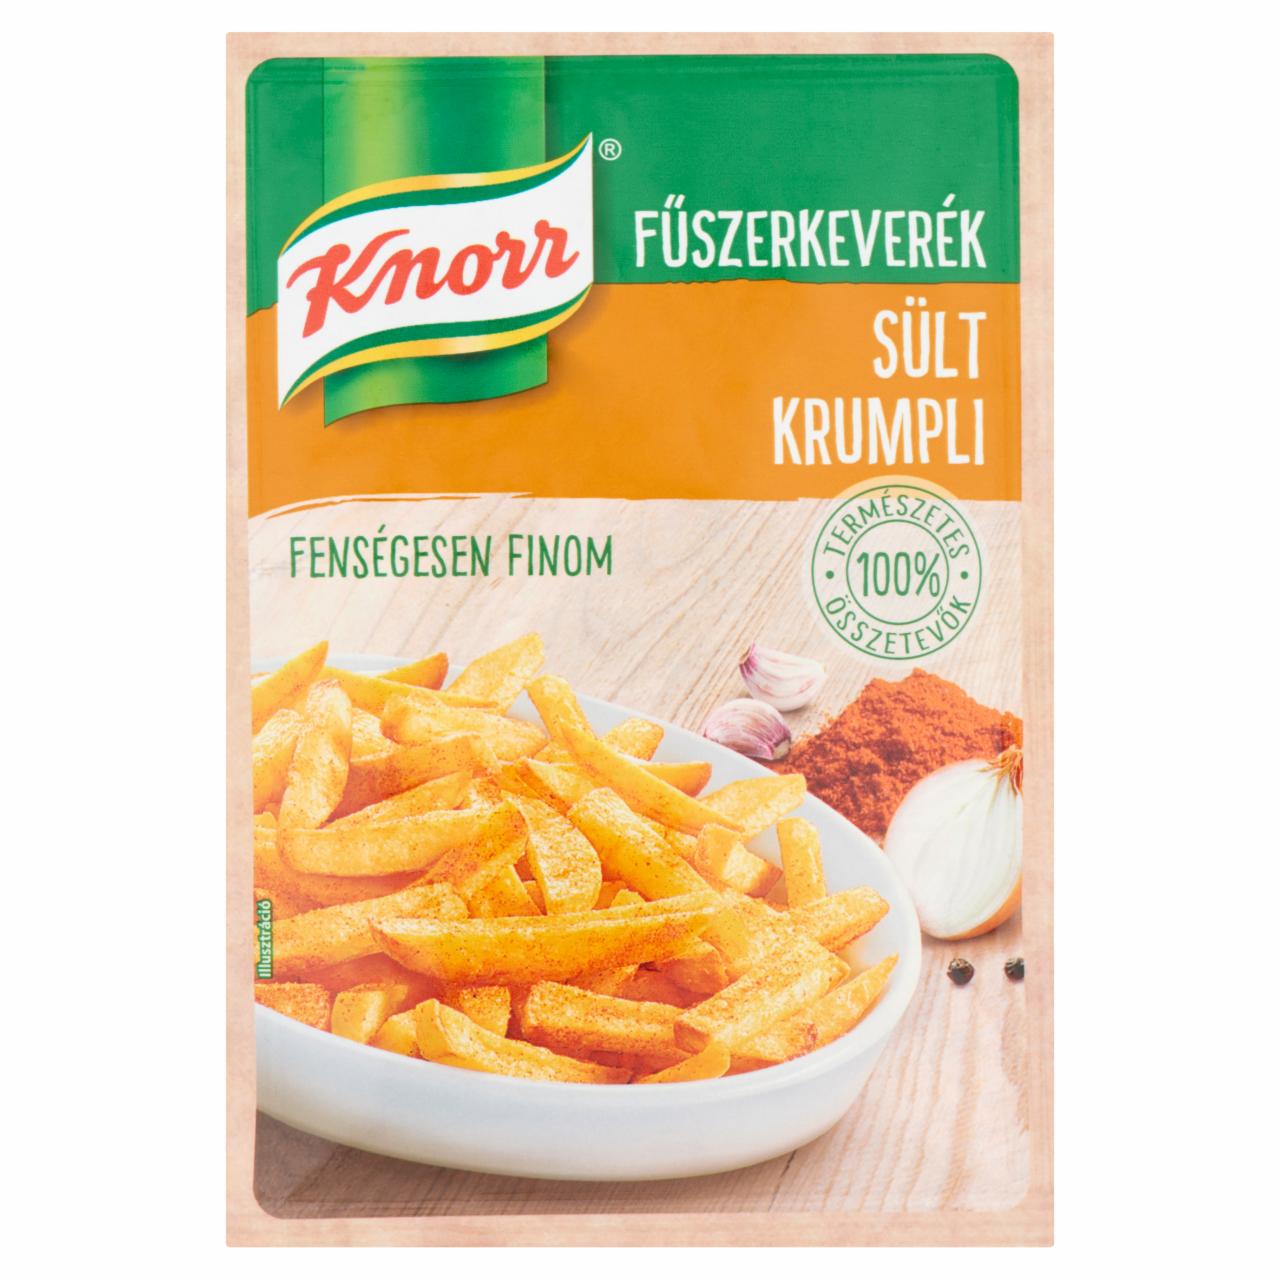 Képek - Knorr sült krumpli fűszerkeverék 35 g